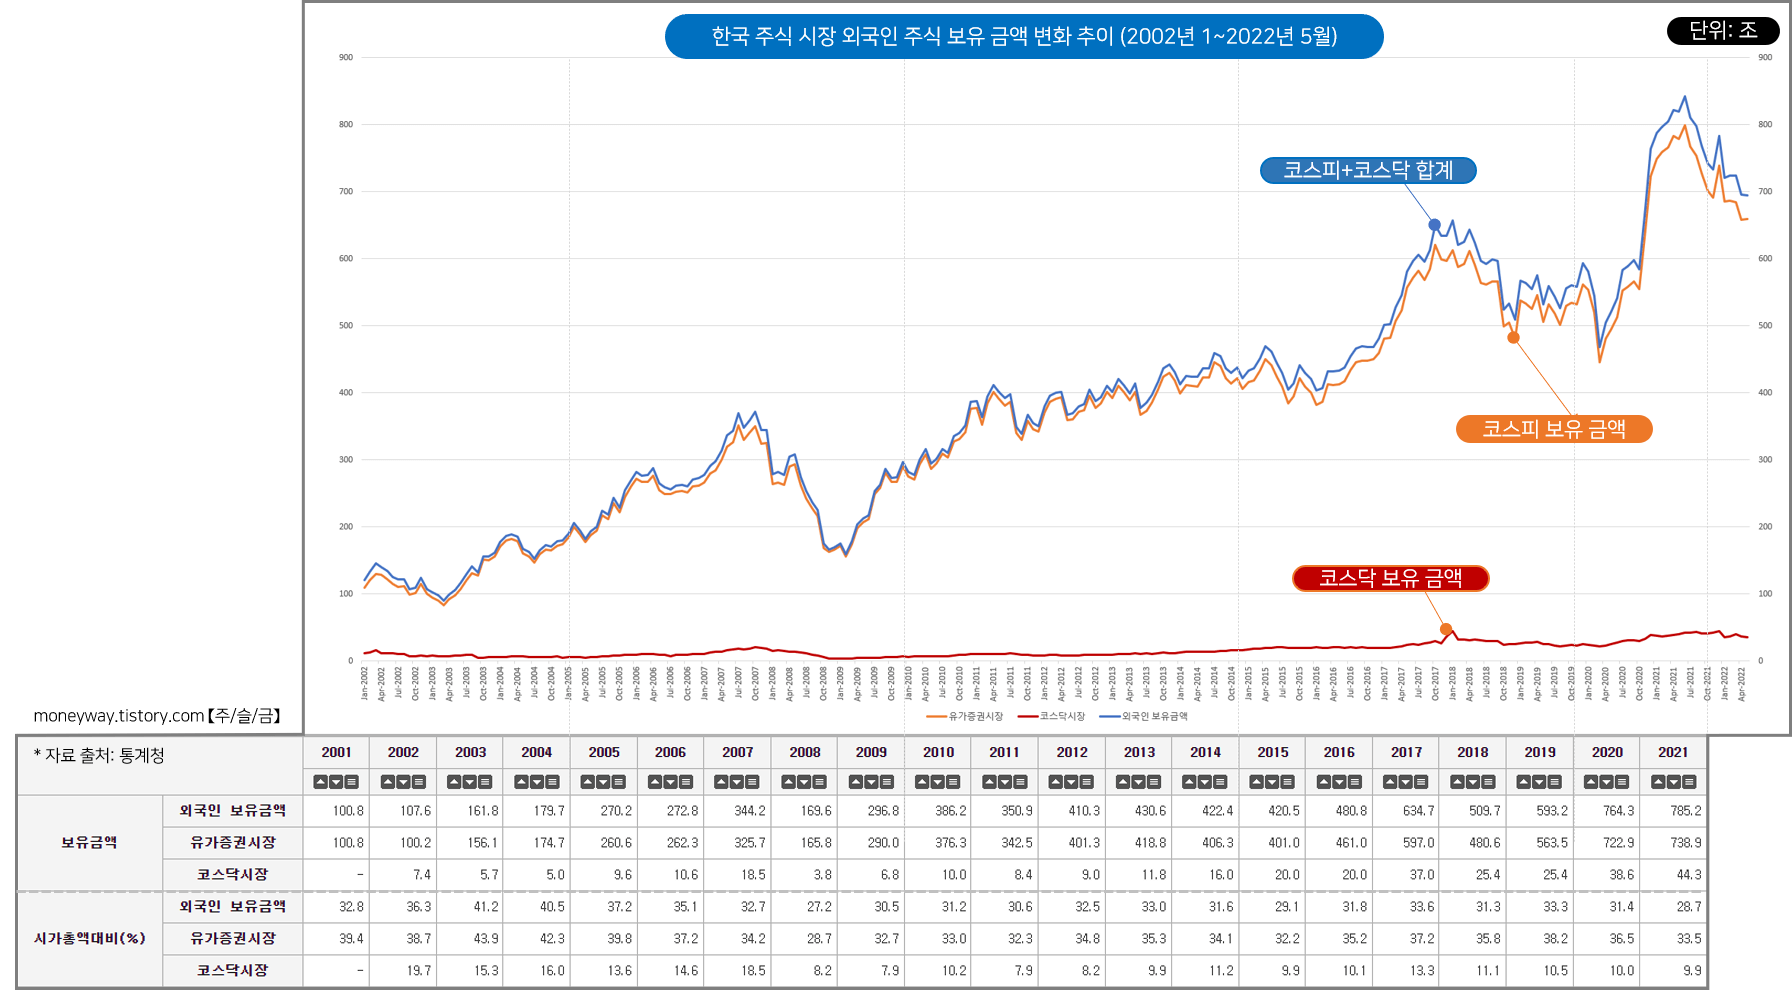 한국 주식 시장 외국인 주식 투자 금액 및 비중 추이 변화 (2001~2021년)